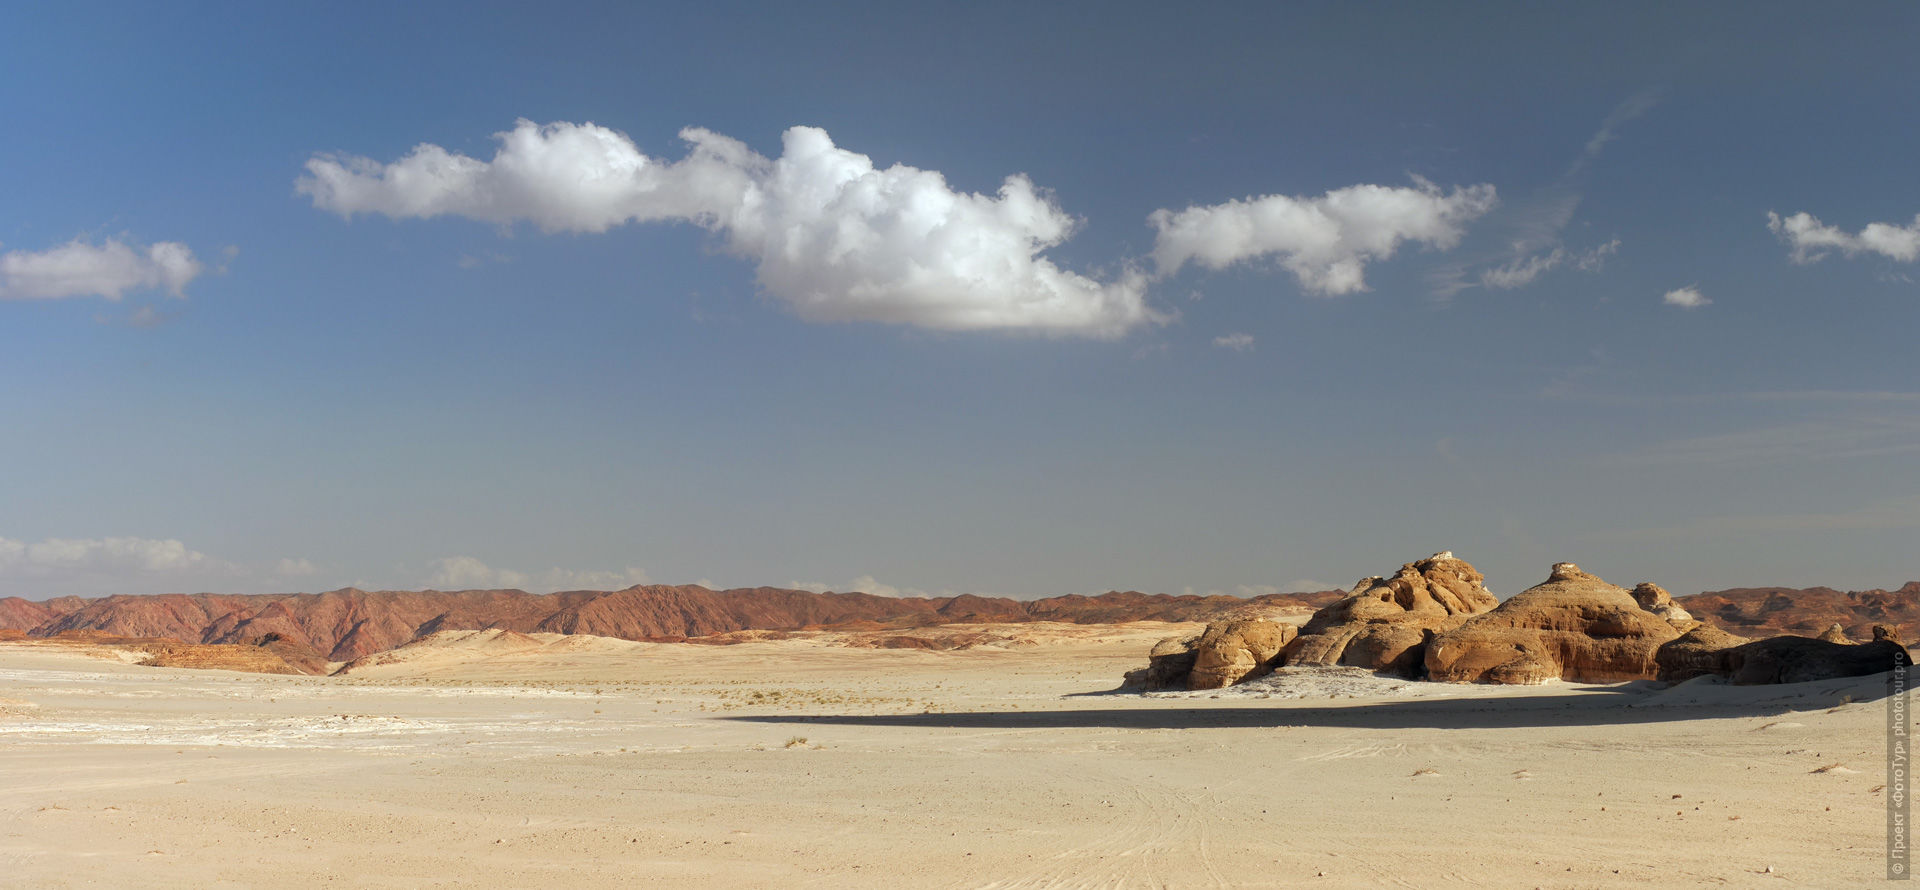 Синайская Пустыня, фототур в Дахаб, Синай, Египет.